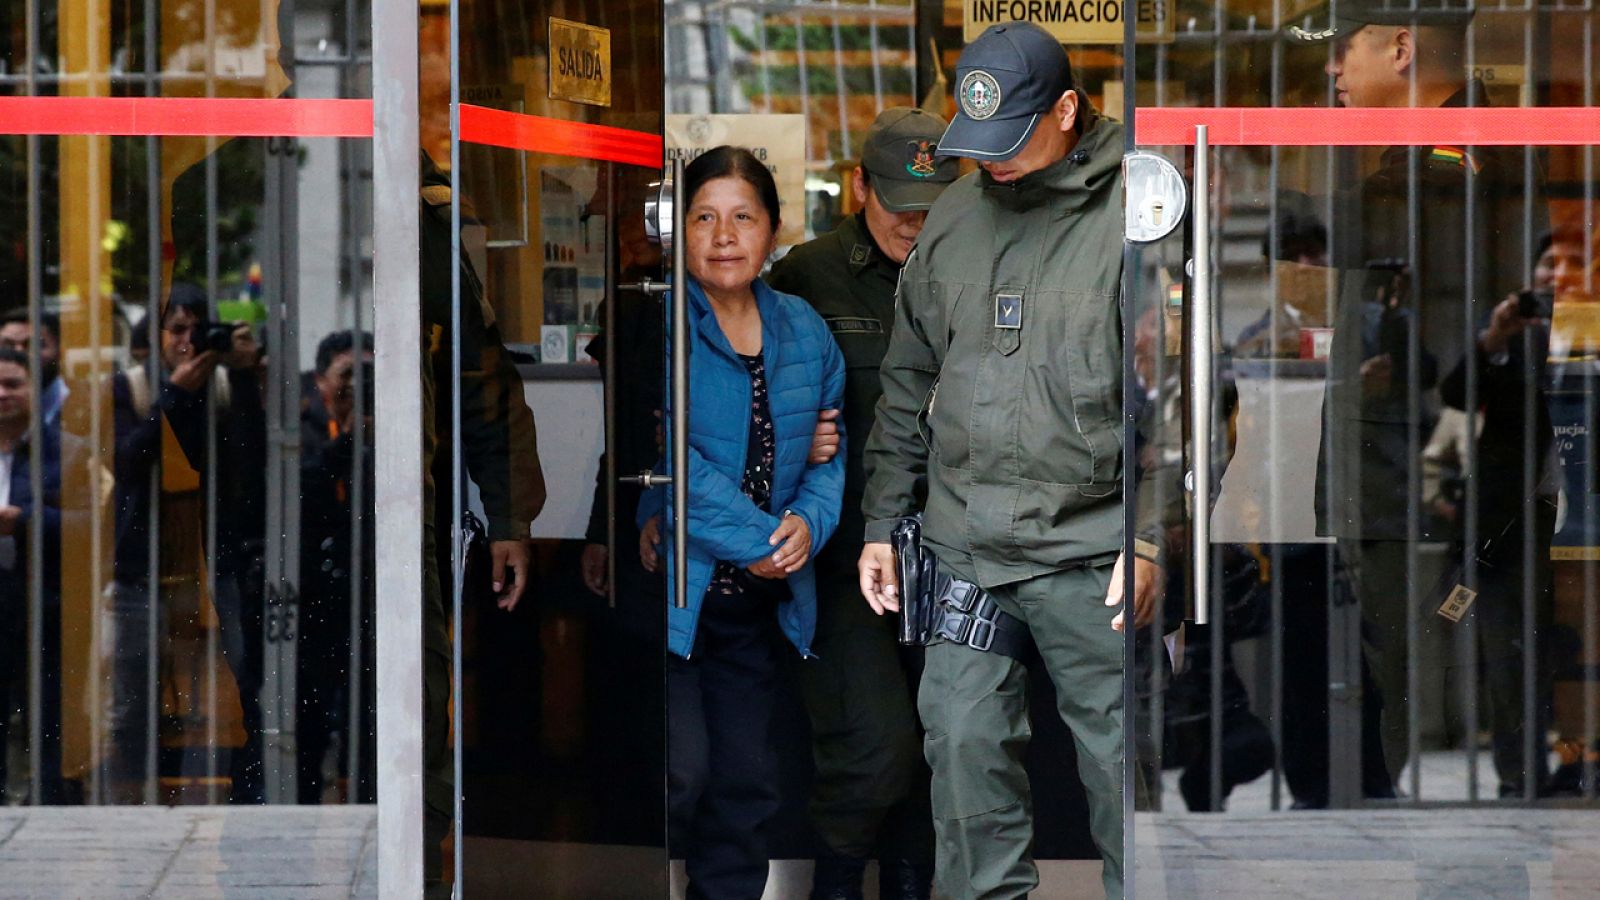 La OEA confirma "operaciones fraudulentas" que alteraron la voluntad popular en las elecciones bolivianas